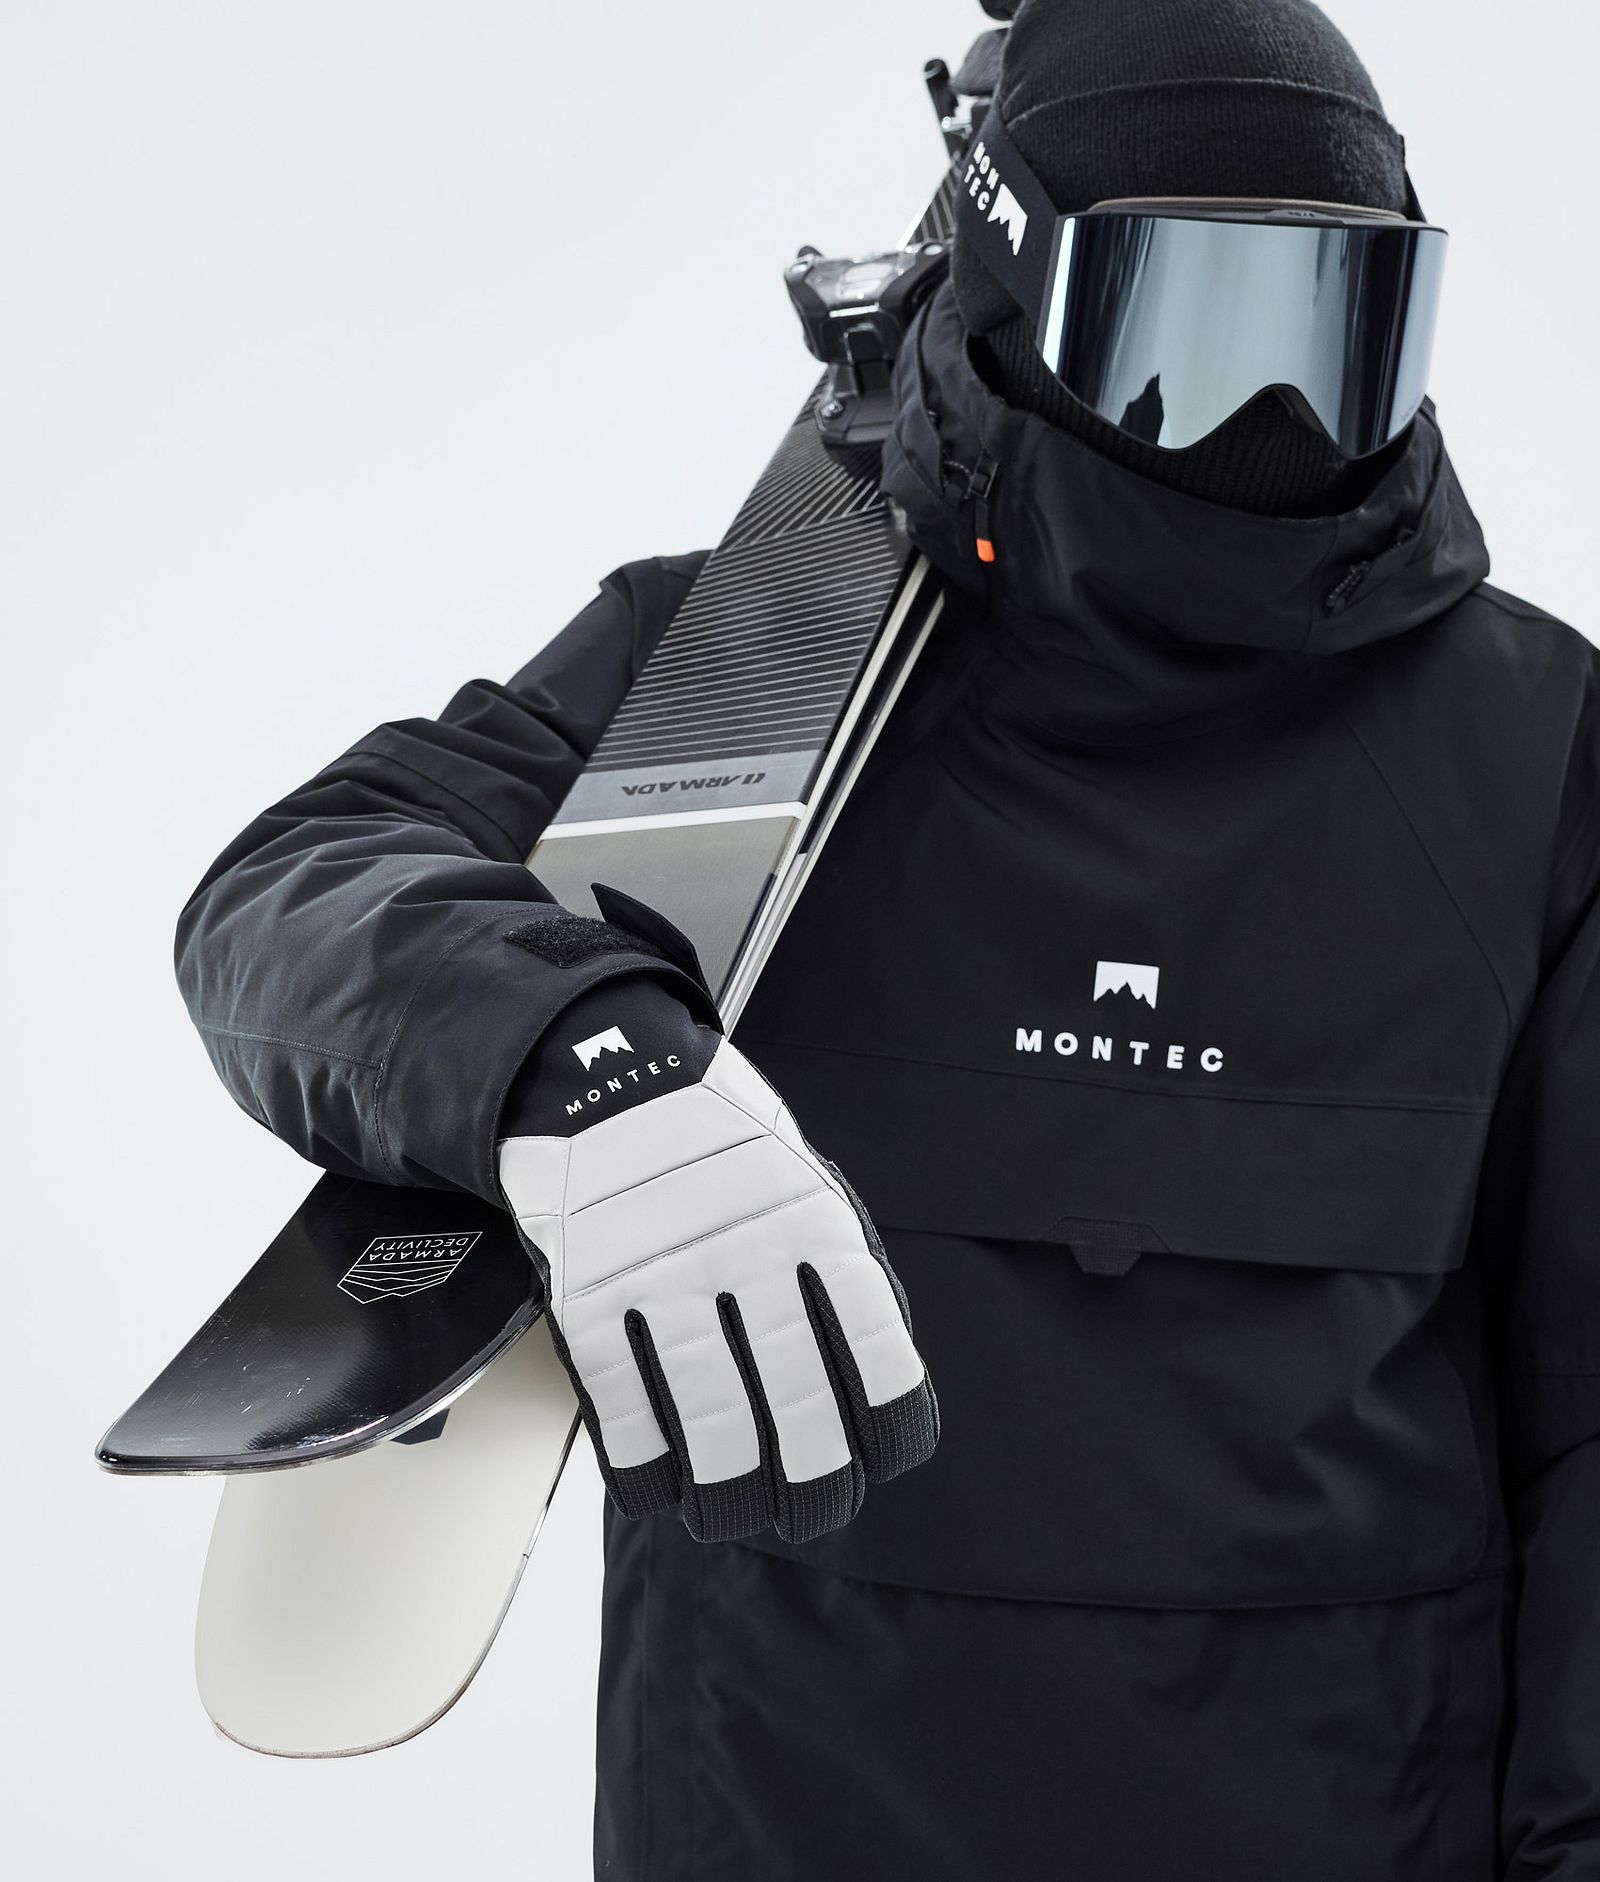 Kilo Ski Gloves Light Grey, Image 4 of 5